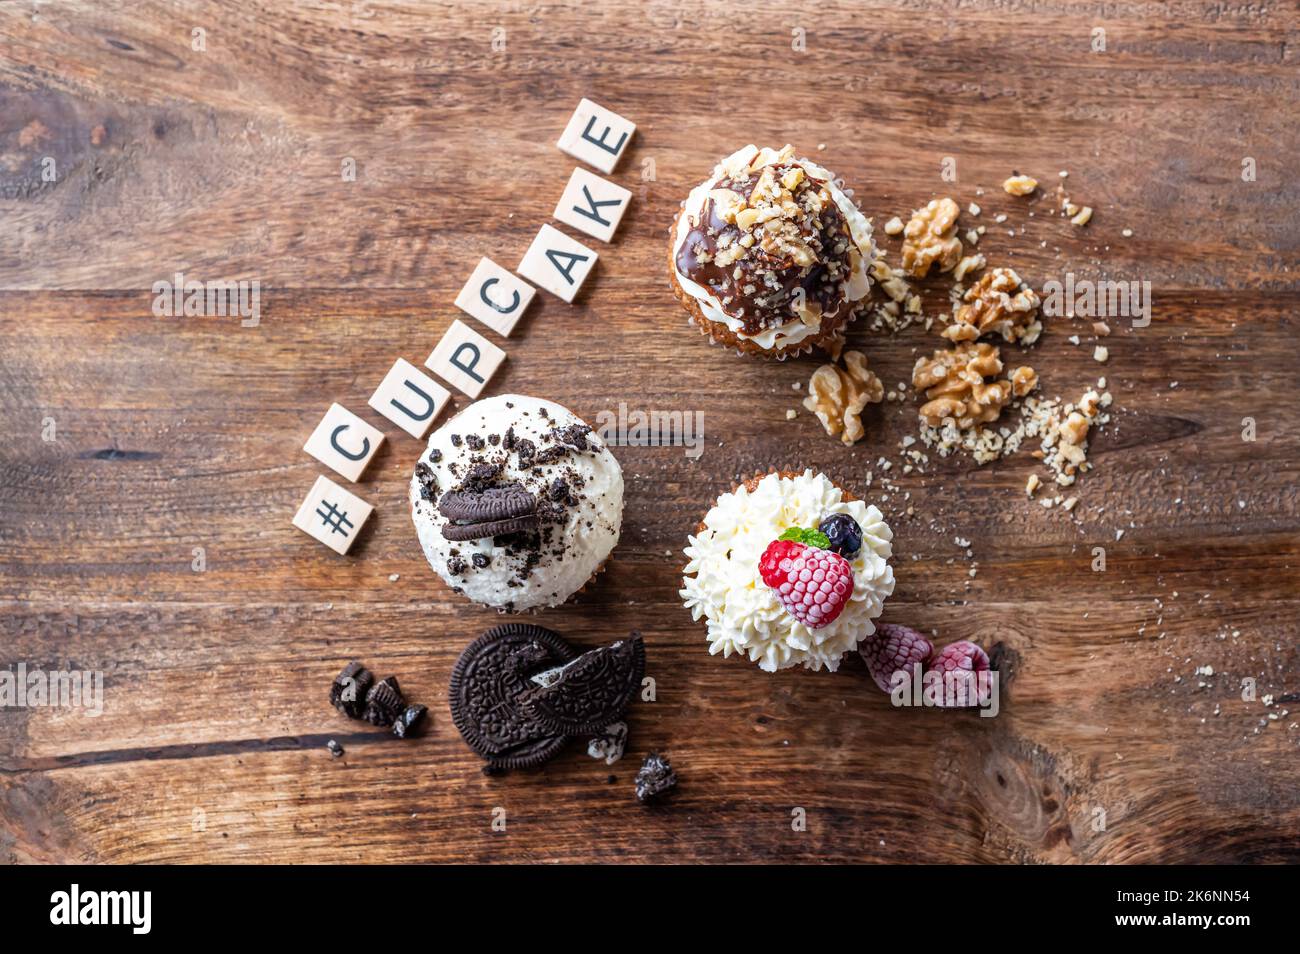 Drei leckere Cupcakes auf einem Holztisch. Weiße Creme, Schokolade und Himbeere, mit Nuss überzogen. Das Wort Cupcake aus Holzblöcken. Stockfoto